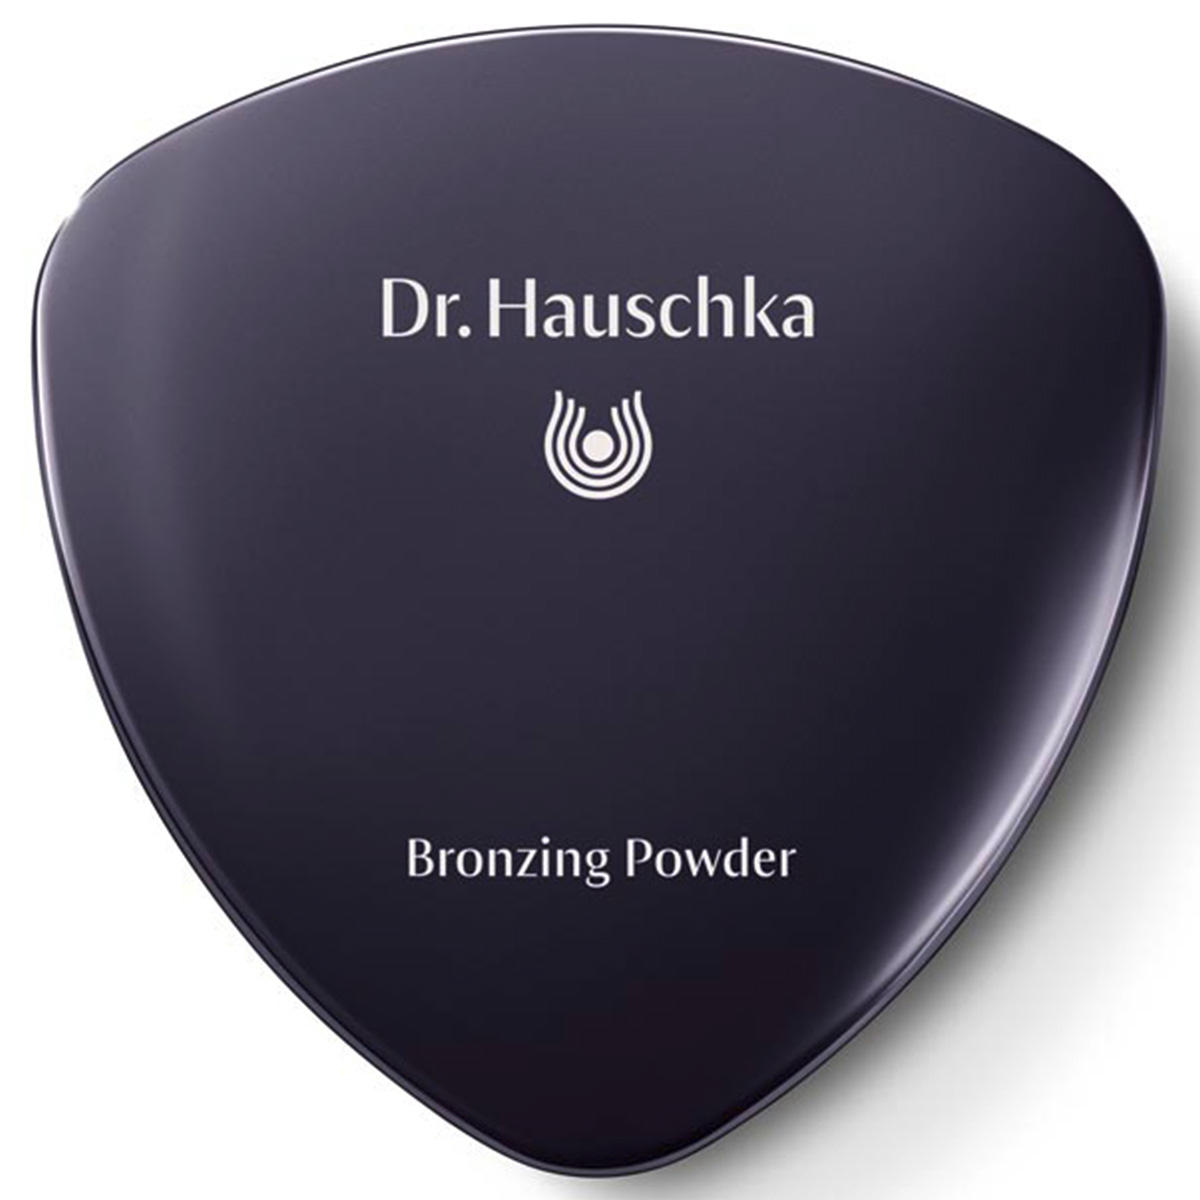 Dr. Hauschka Bronzing Powder 01 brons, inhoud 10 g - 2